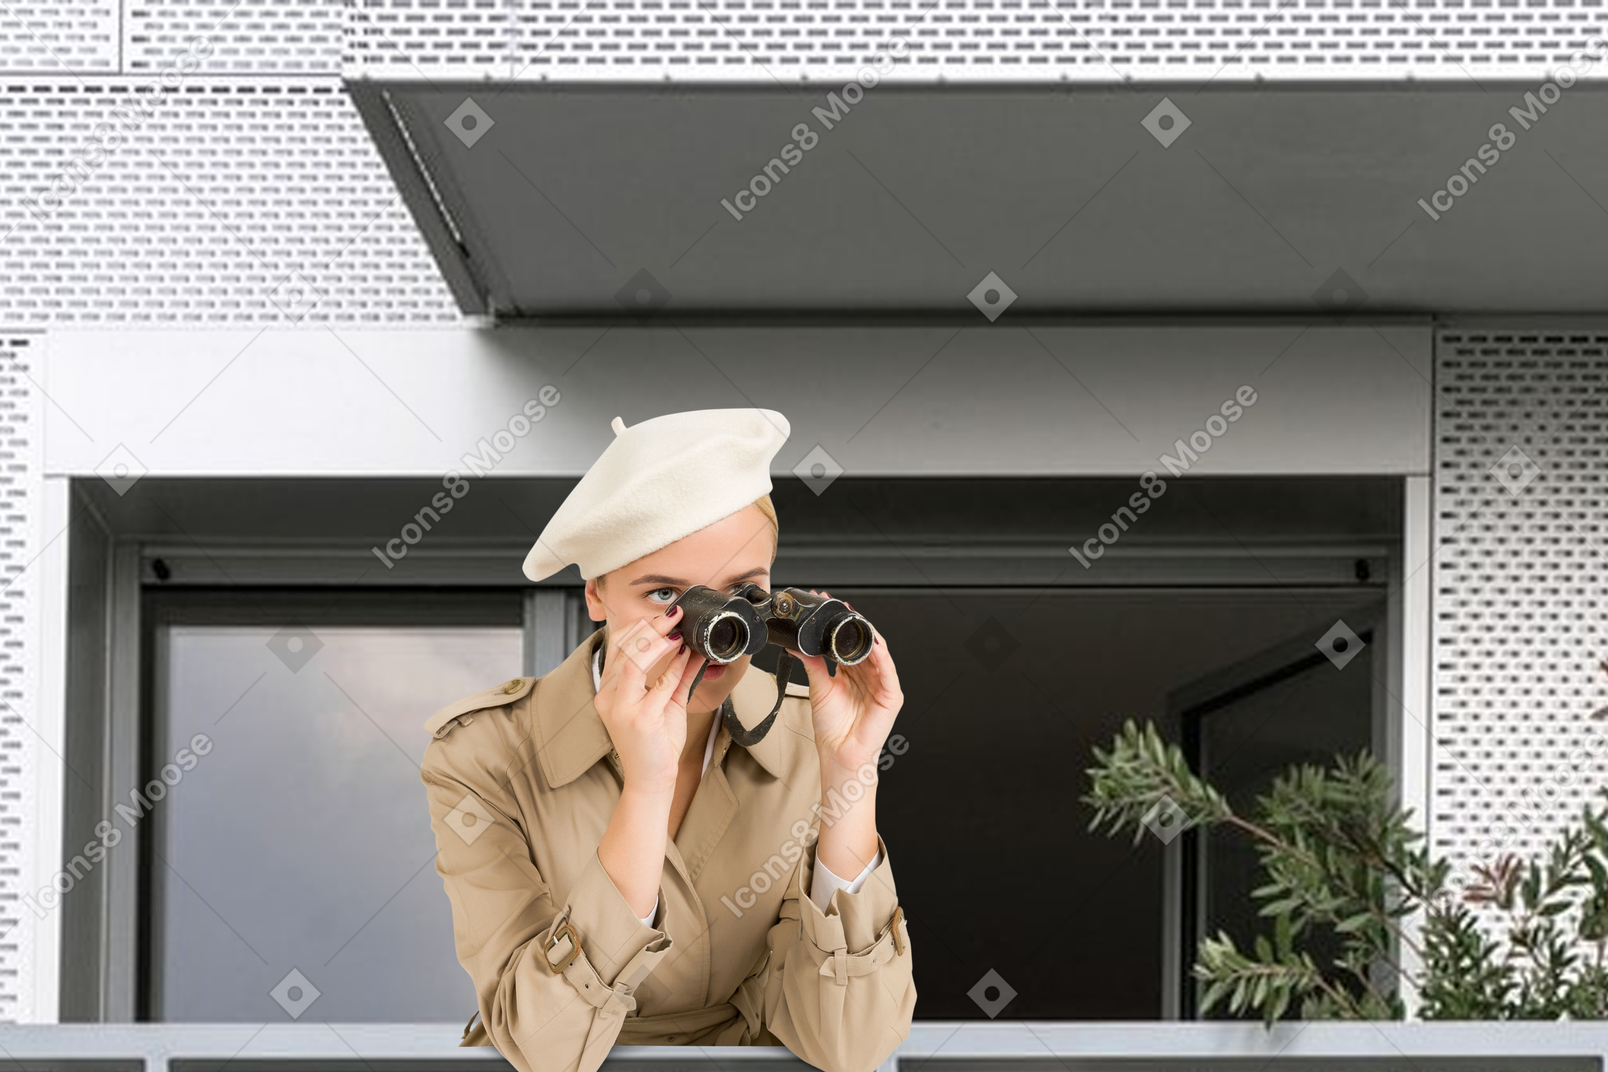 Young woman watching something through binoculars